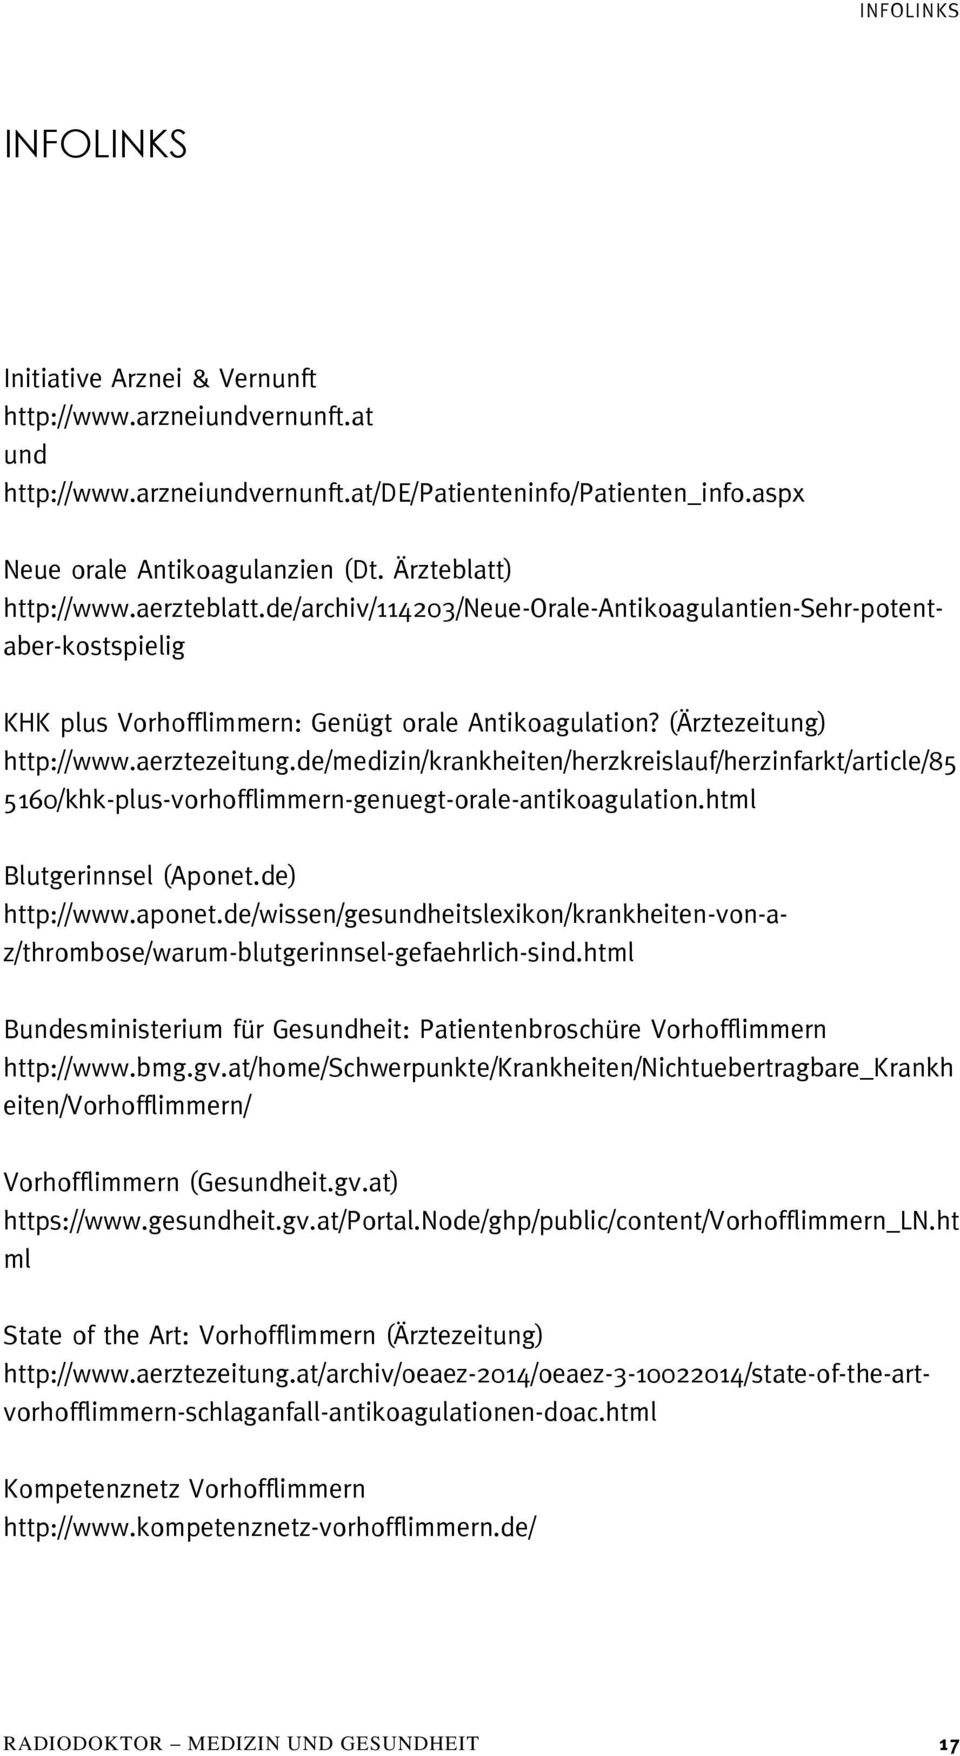 aerztezeitung.de/medizin/krankheiten/herzkreislauf/herzinfarkt/article/85 5160/khk-plus-vorhofflimmern-genuegt-orale-antikoagulation.html Blutgerinnsel (Aponet.de) http://www.aponet.